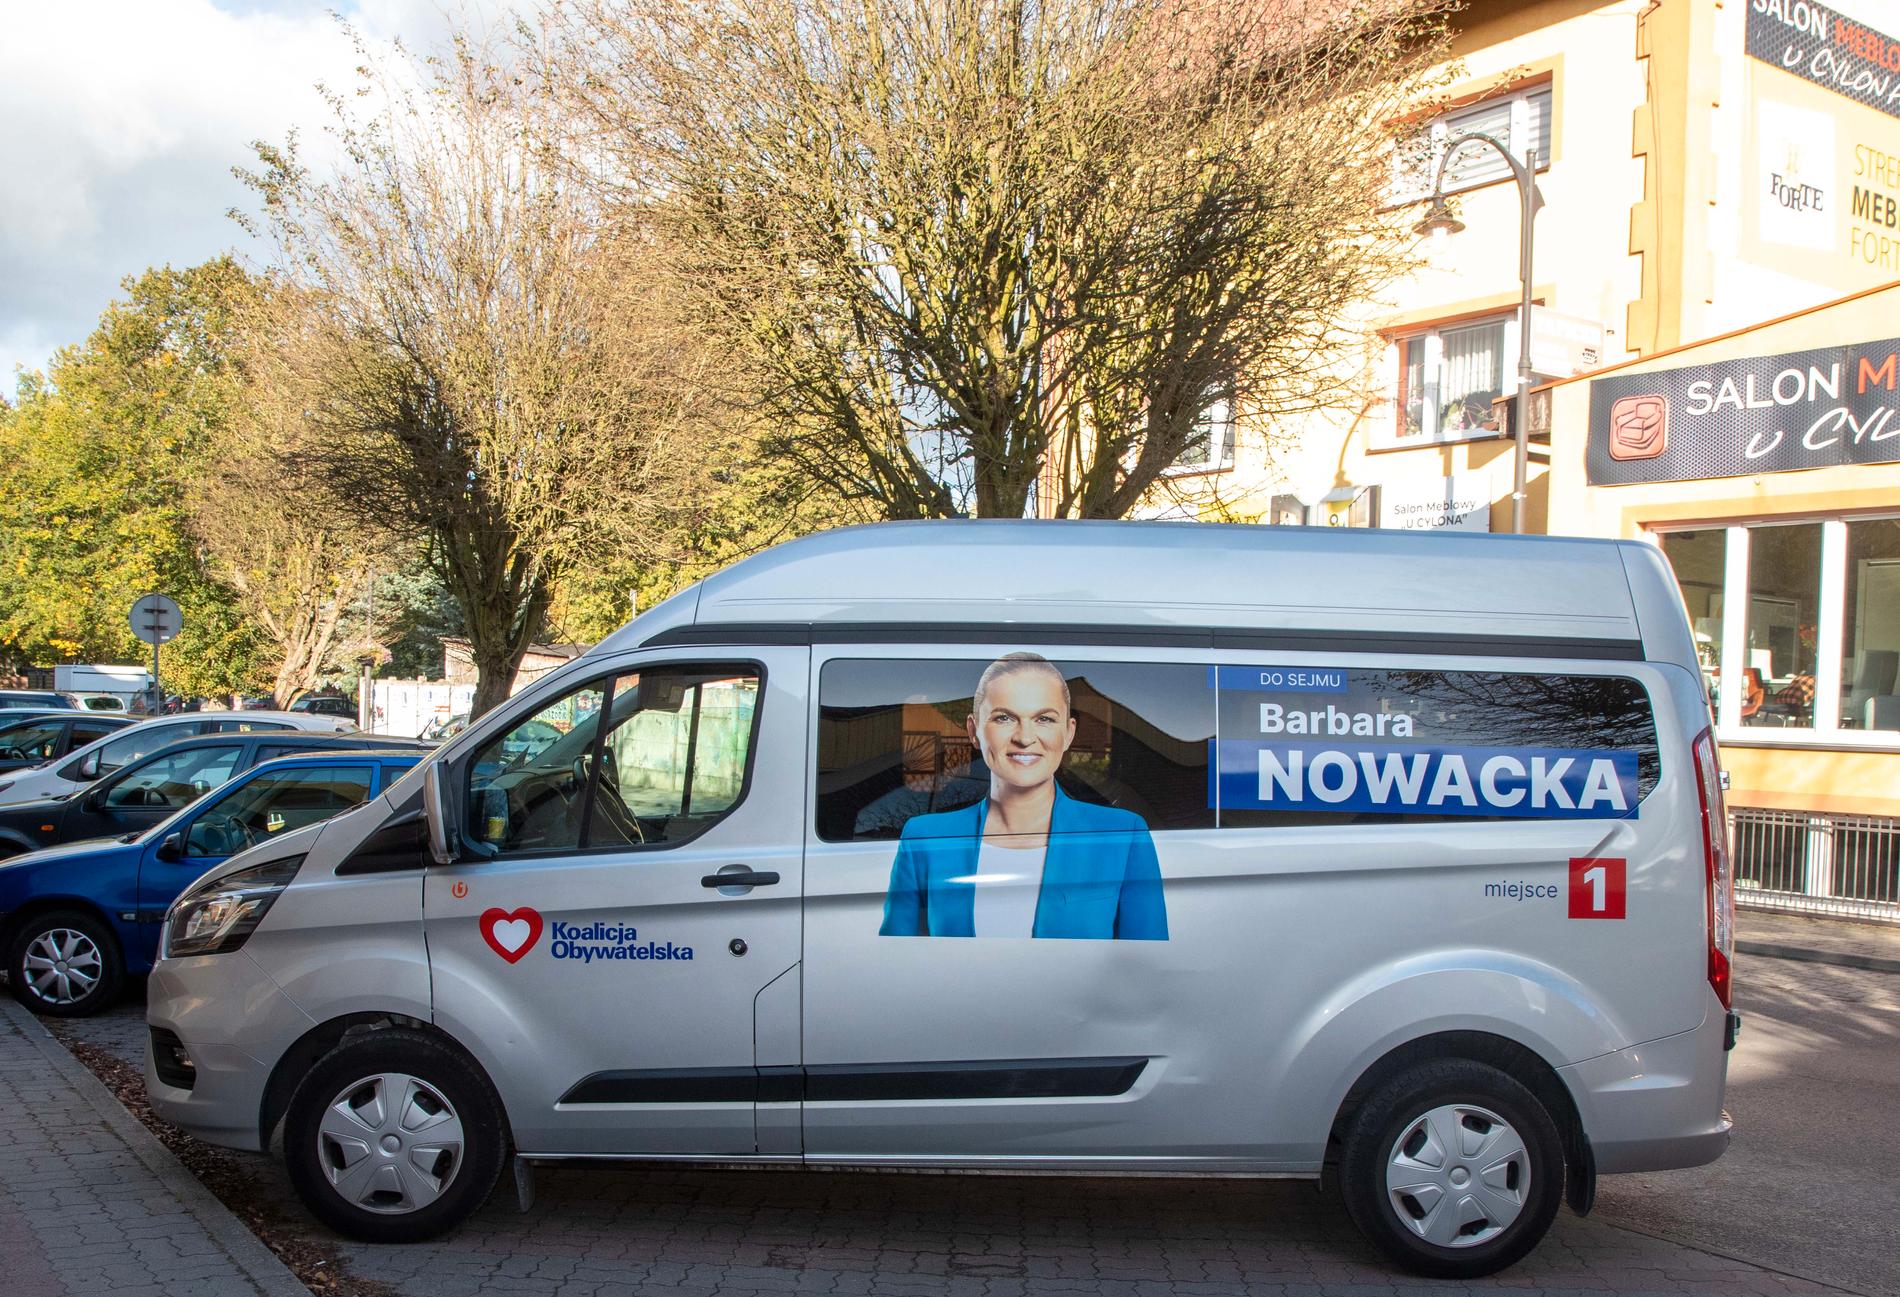 Kampanjbuss för Barbara Nowackas kampanj